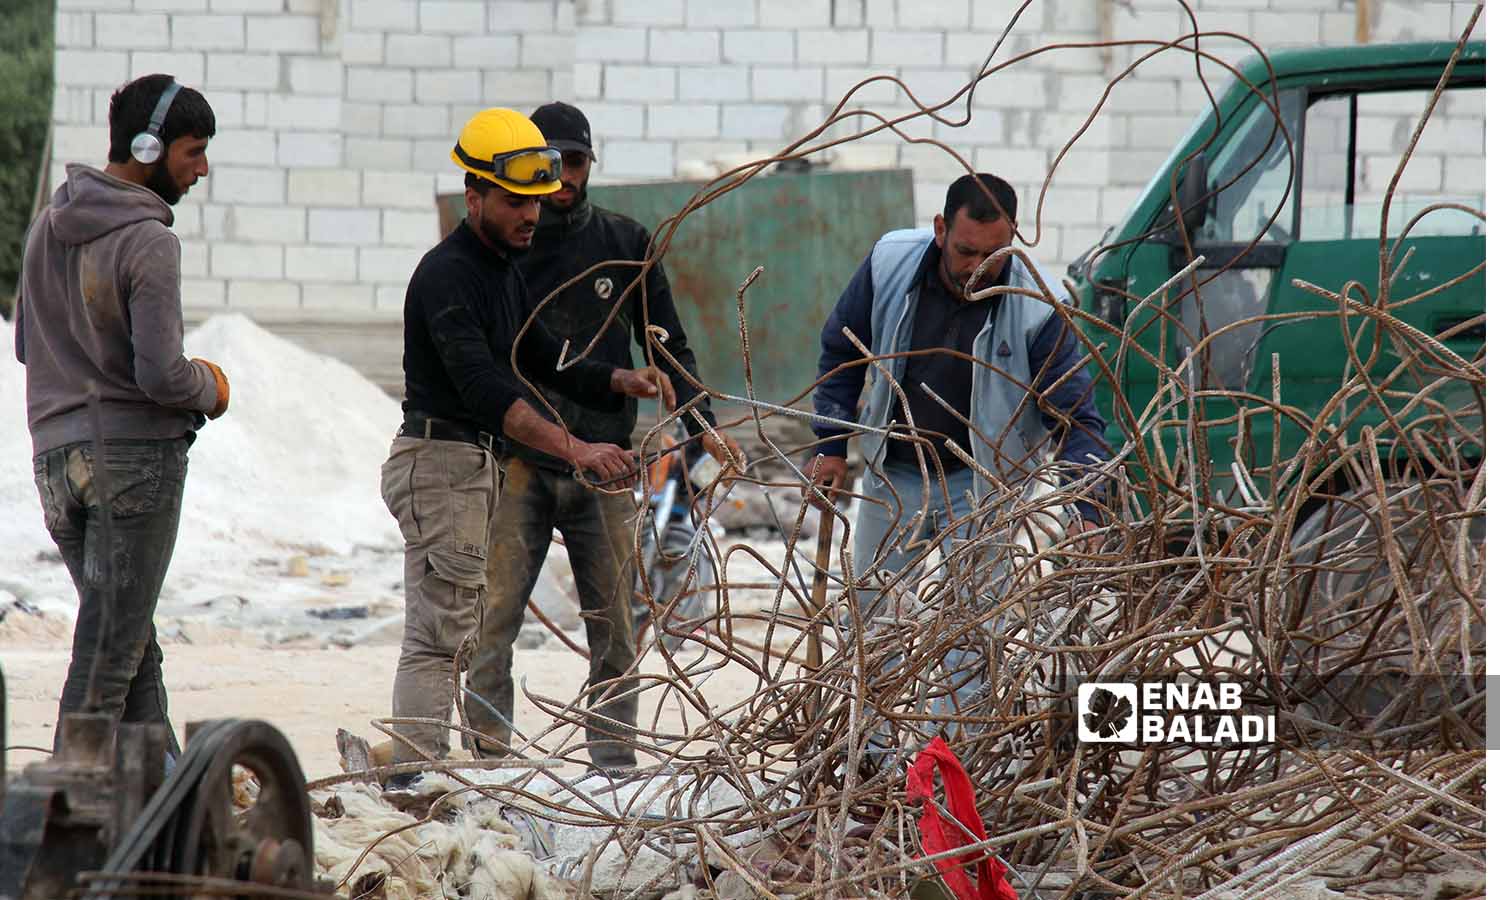 عمال يقومون باستخراج قضبان الحديد من الأبنية المدمرة بفعل الزلزال في سلقين بريف إدلب- 30 نيسان 2023(عنب بلدي- إياد عبد الجواد)